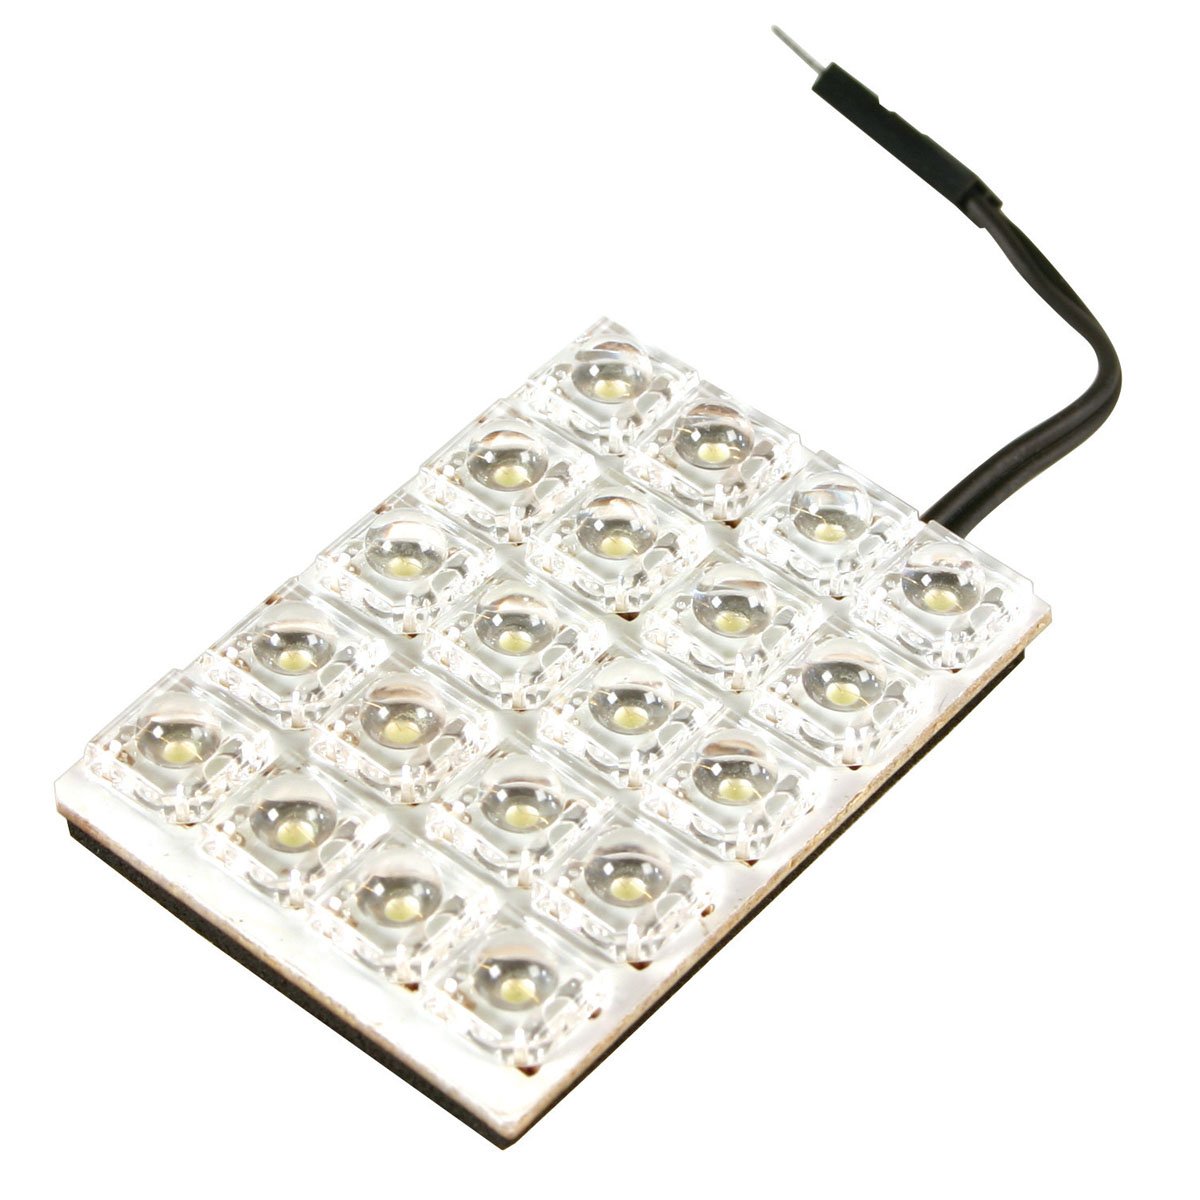 Pilot LA_58501 Hyper-LED Platinen-Lampe 35 x 50, weiß, 5 x 4 LEDs von Lampa